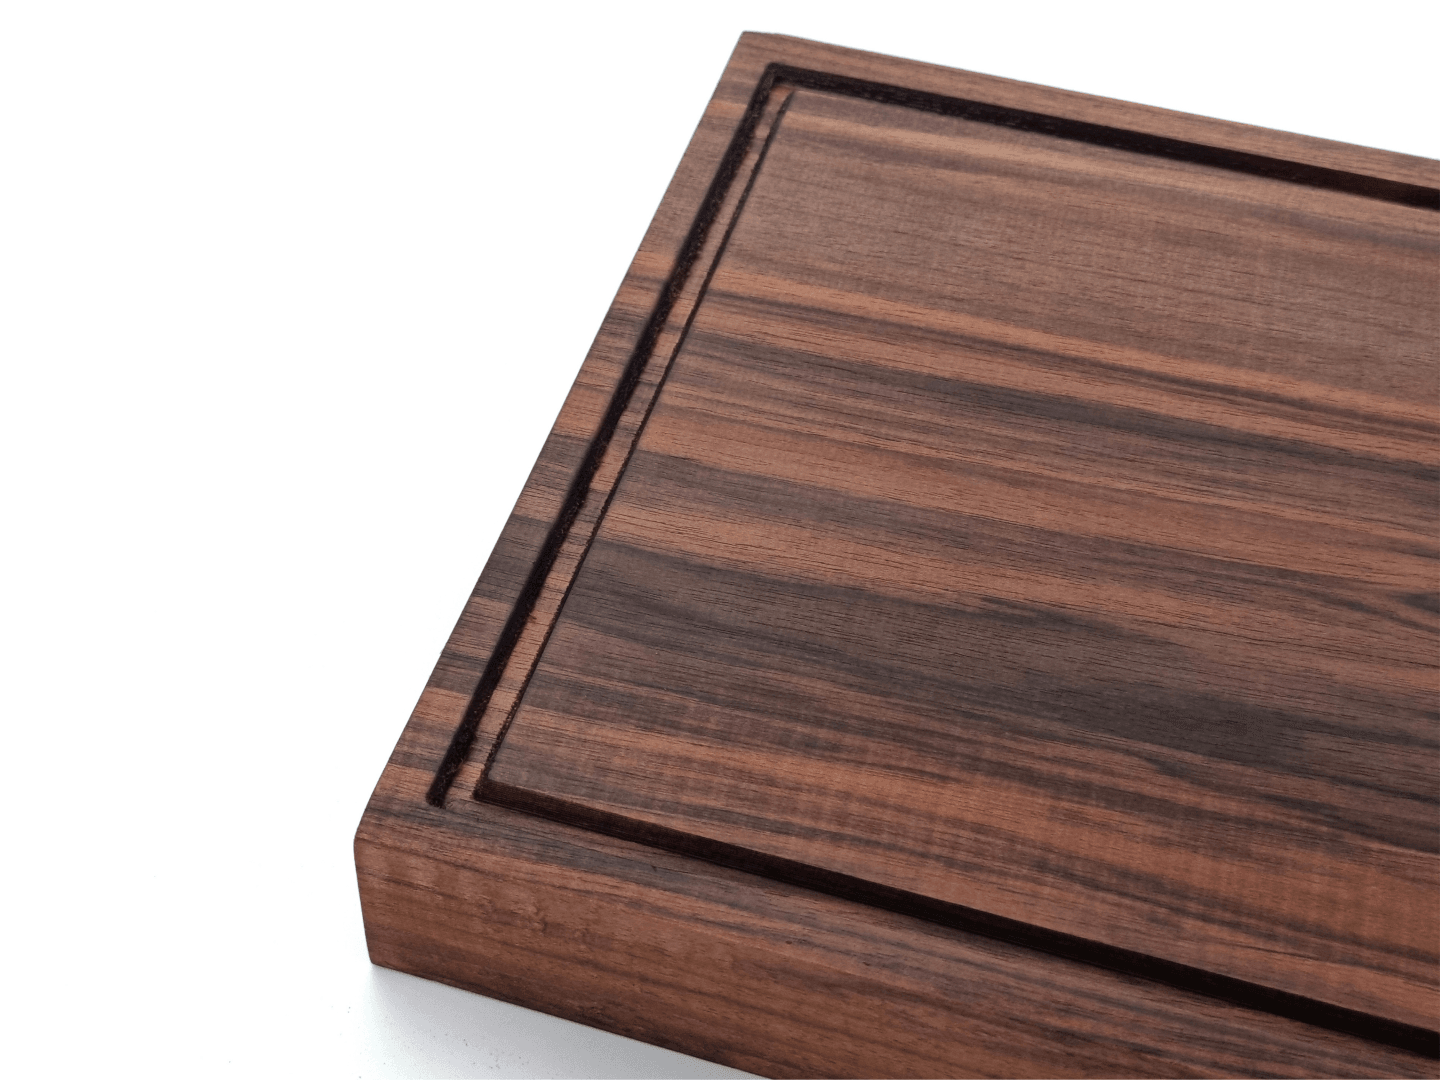 Thick Walnut Cutting Board | Minimalist Design